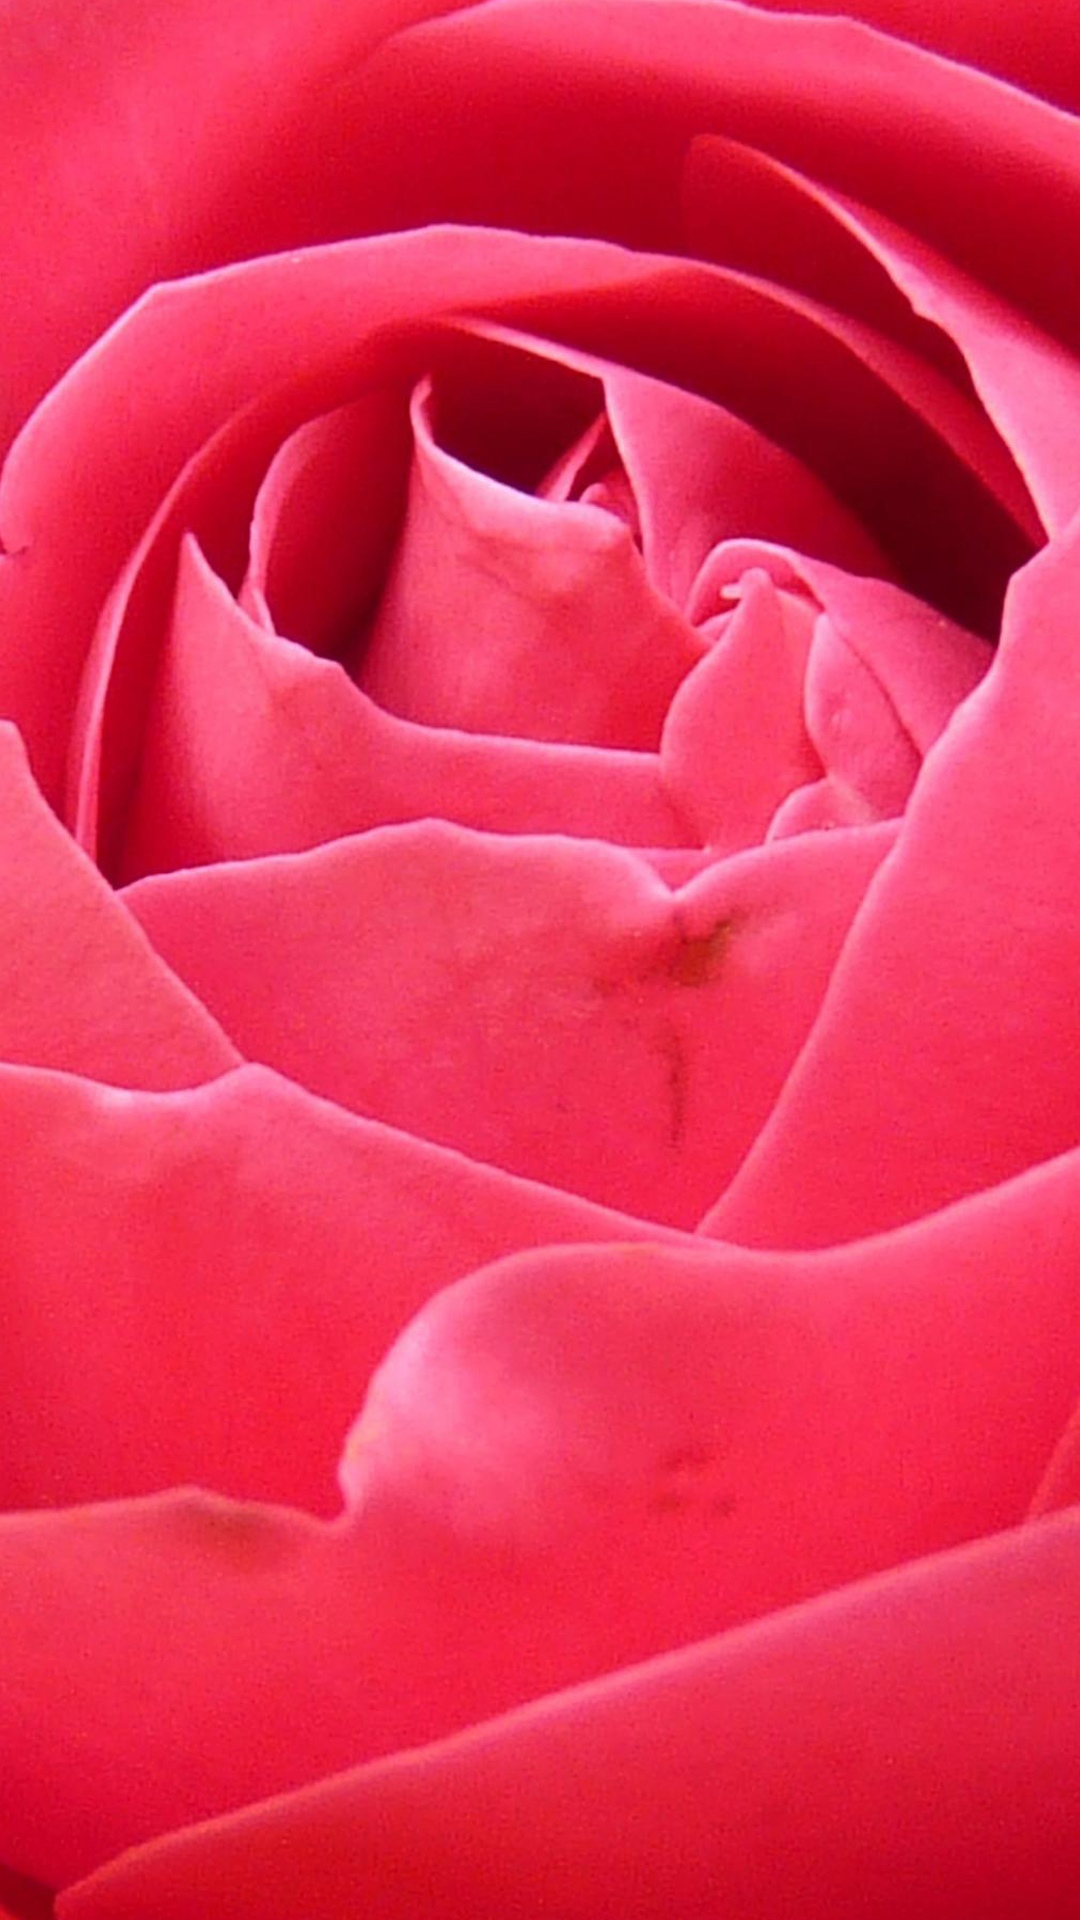 桃红色玫瑰花瓣